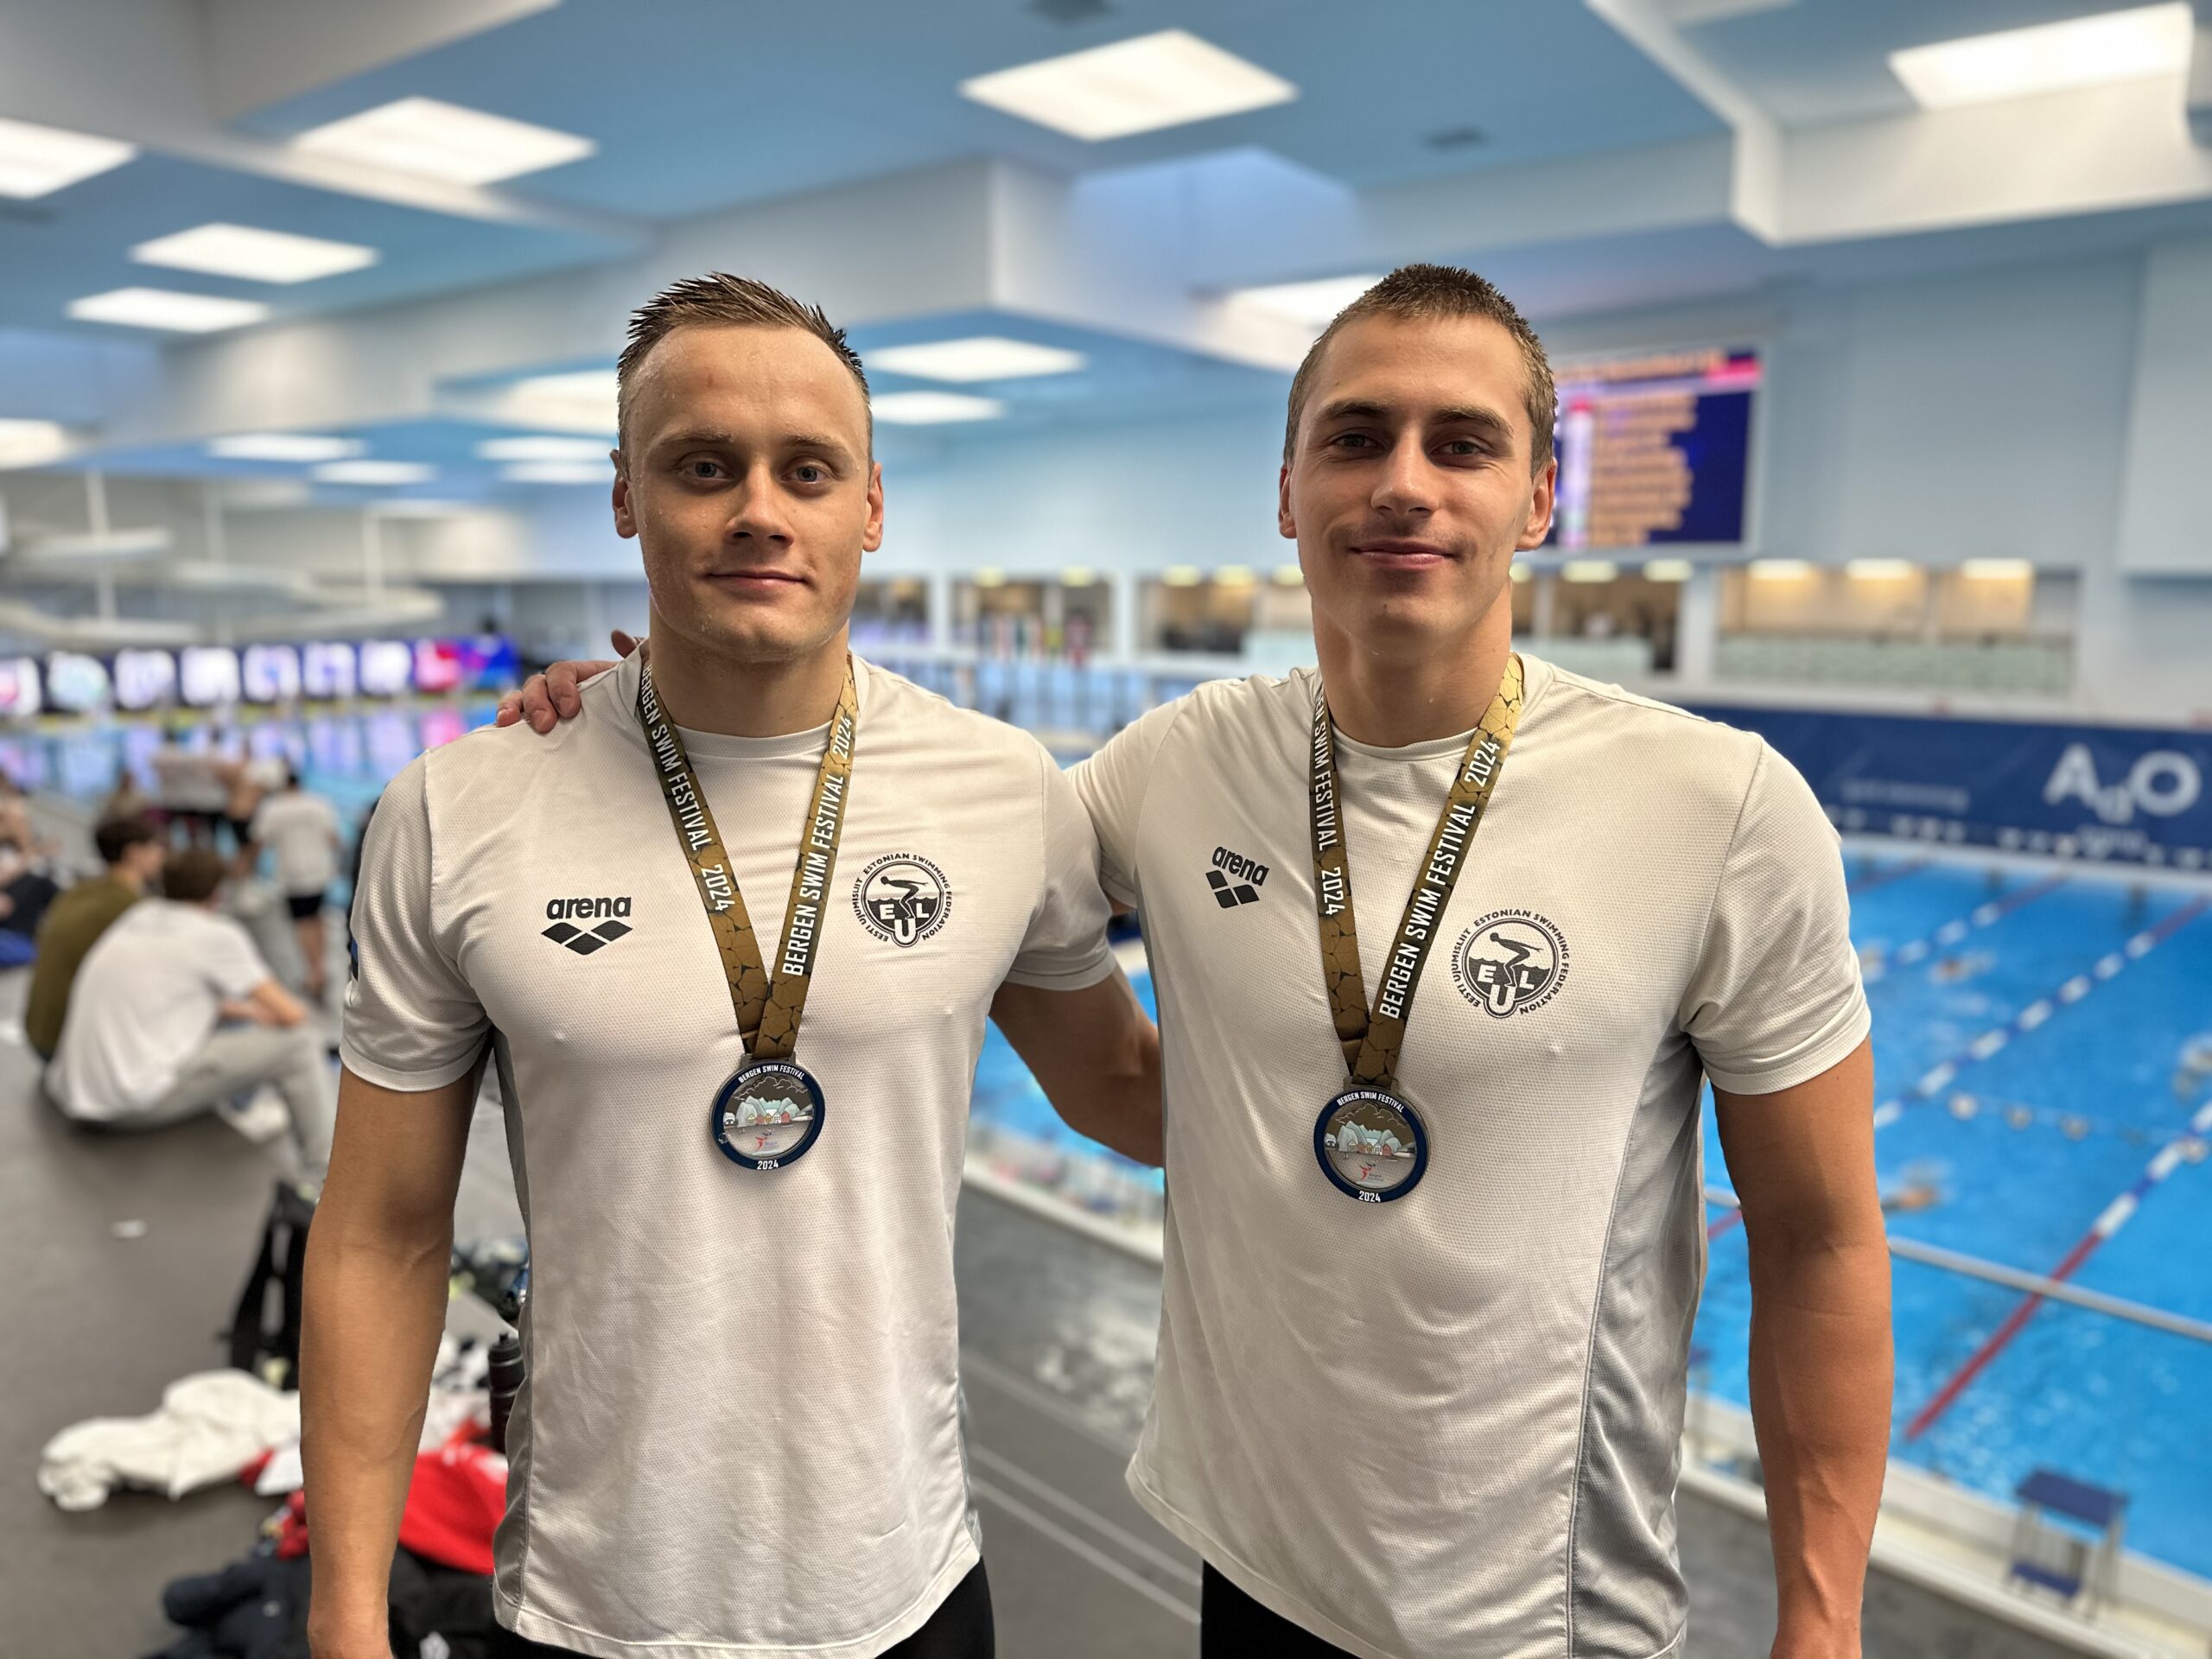 Norras Bergenis jätkuvate ujumisvõistluste teisel päeval teenisid Eesti ujujad kaks esikohta.  Alex Ahtiainen ja Daniel Zaitsev startisid meeste 100m liblikujum